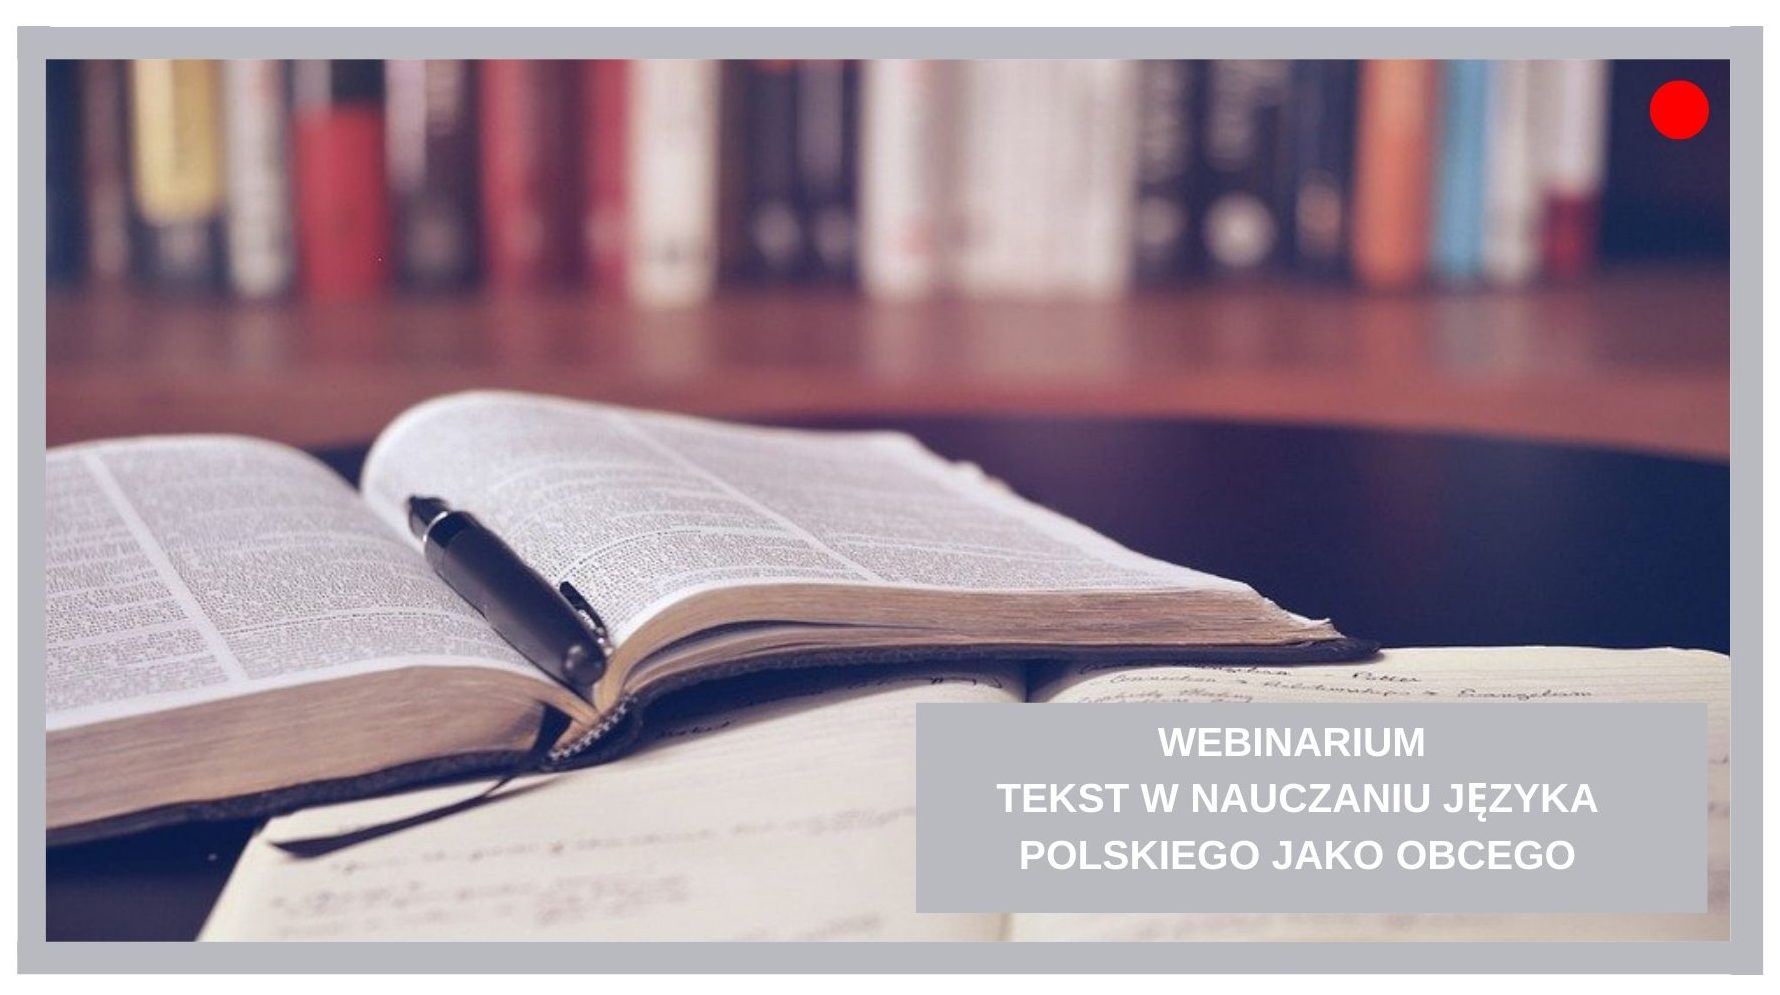 Blog Agnieszka Jasińska - Tekst w nauczaniu języka polskiego jako obcego